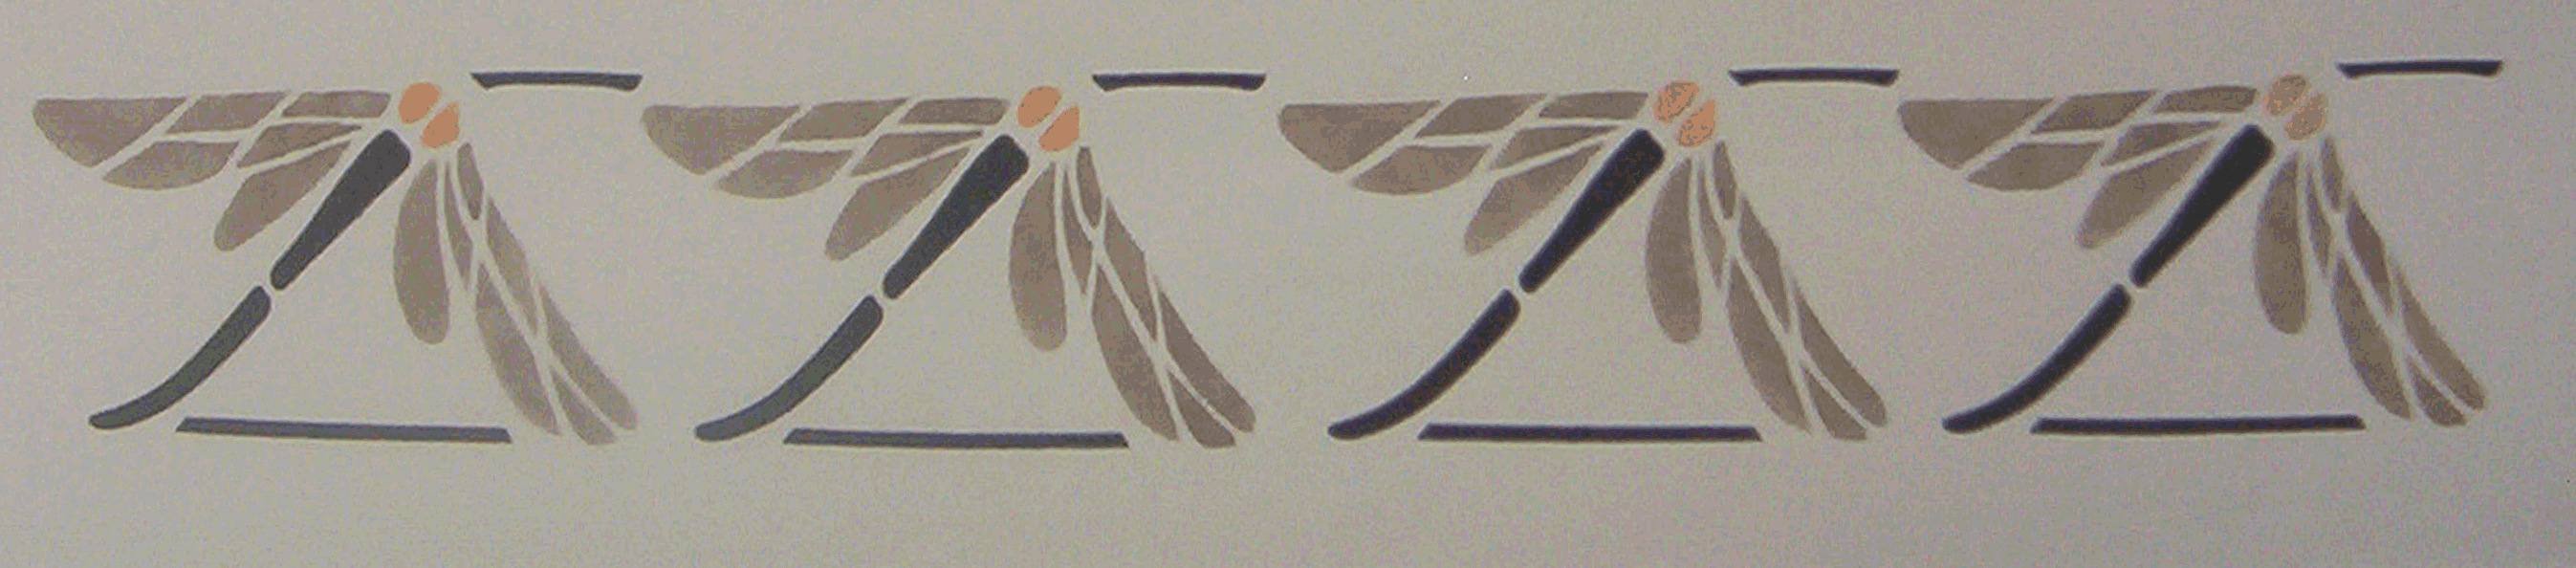 Dragonfly Border Stencils